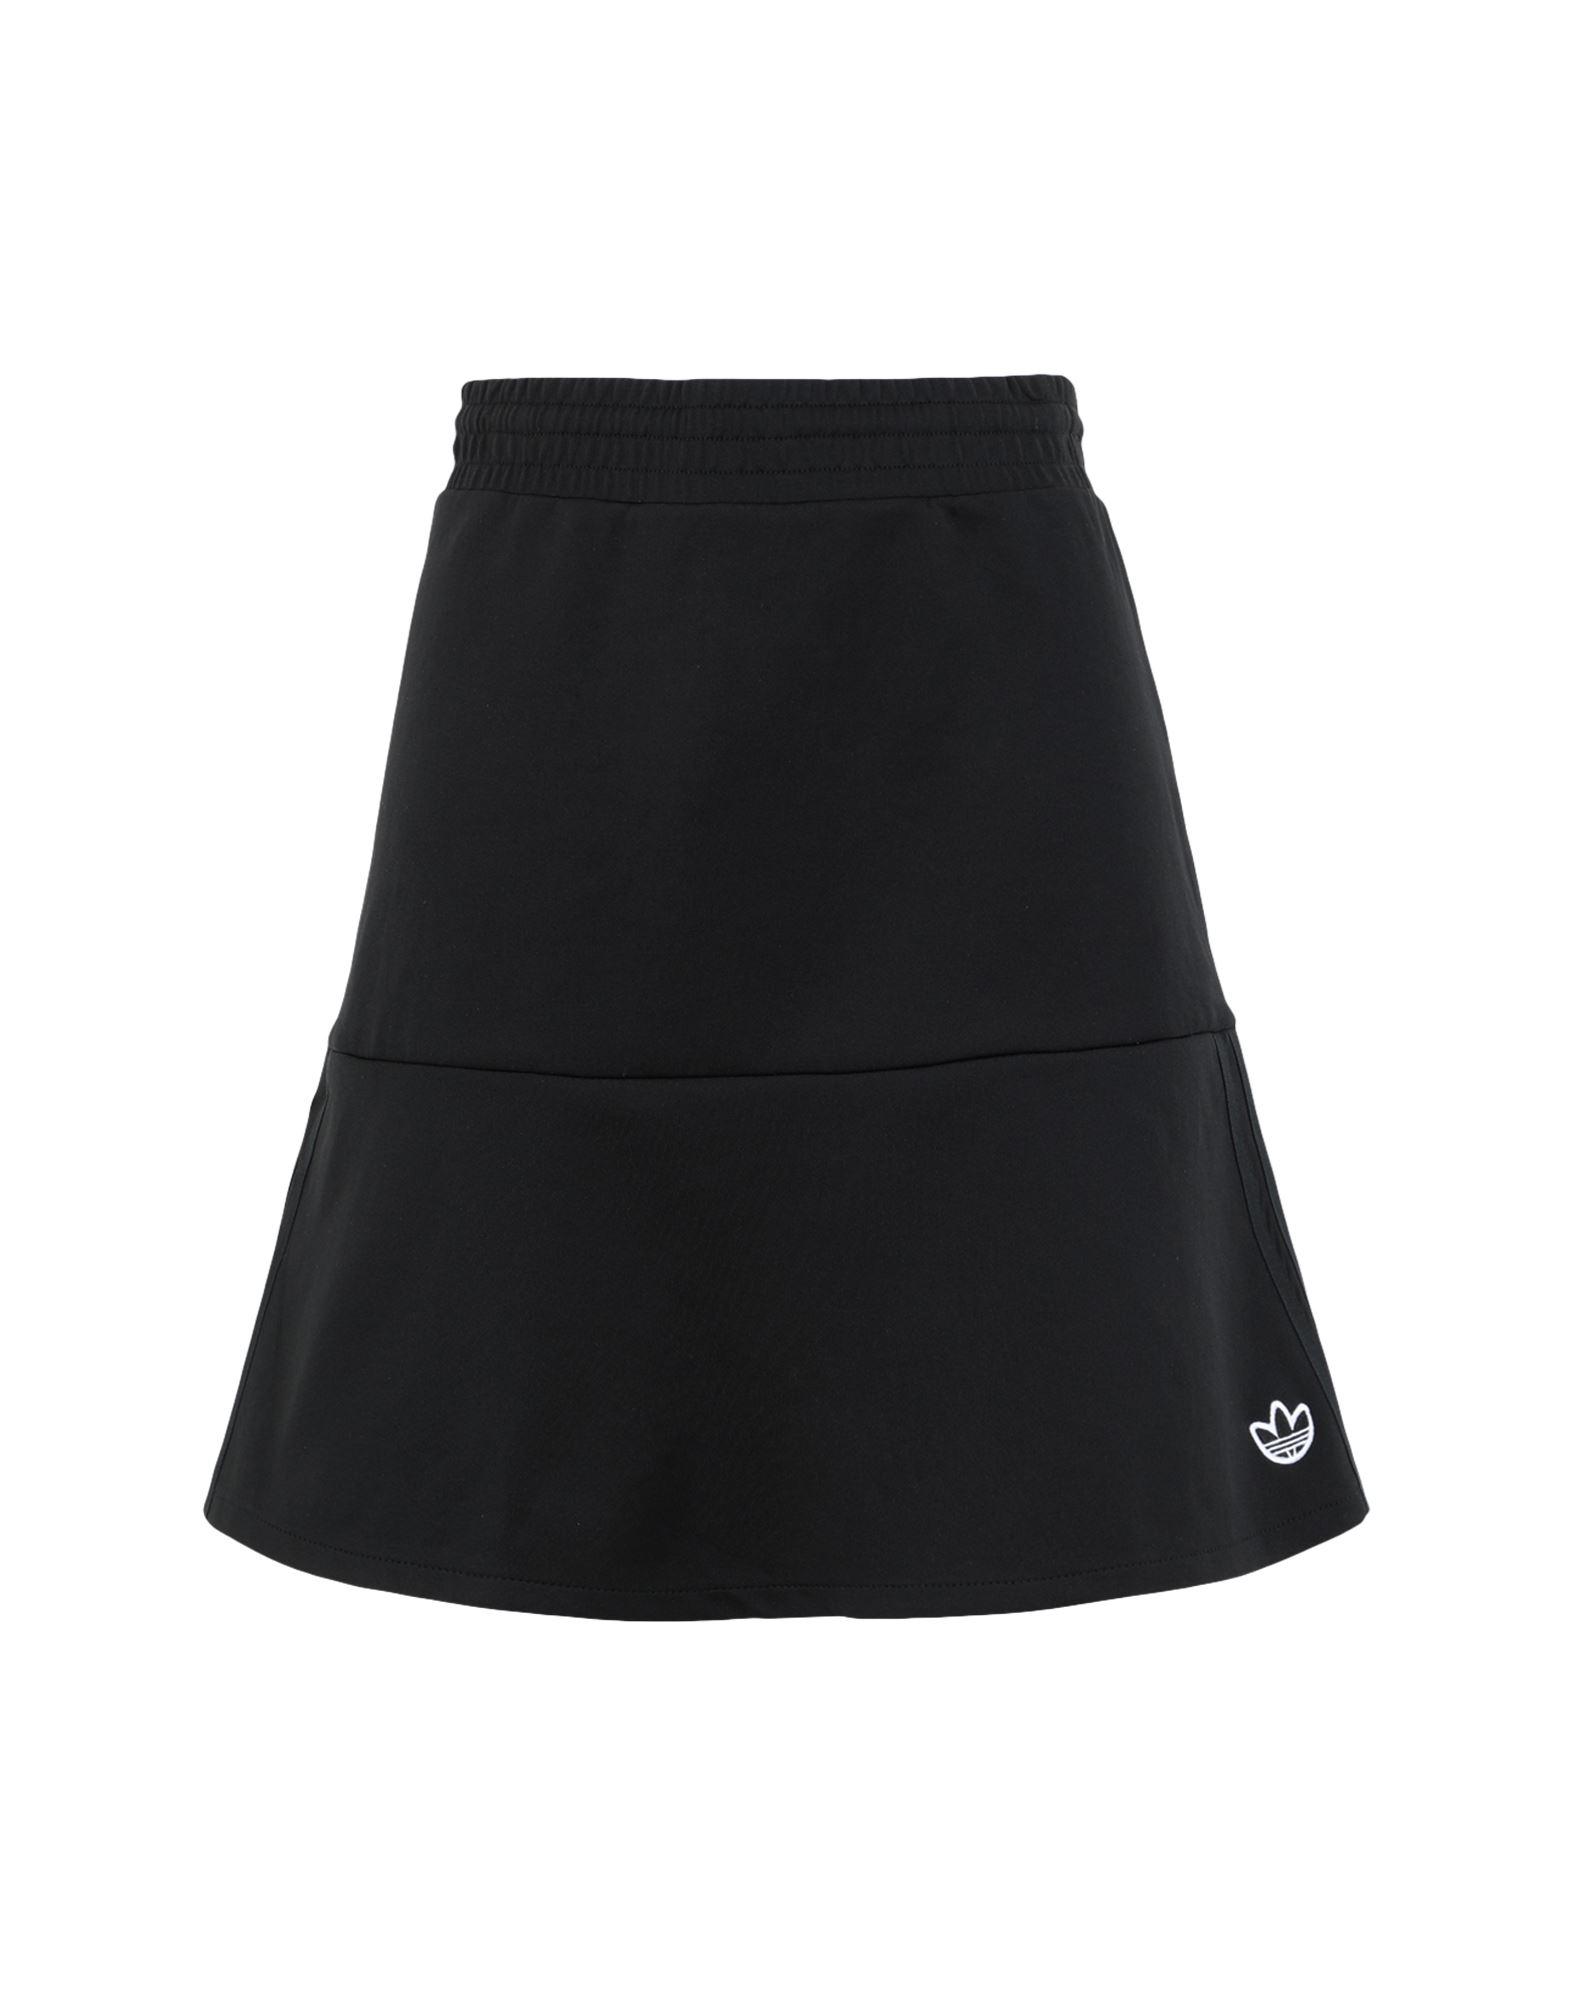 adidas Originals Mini Skirt in Black | Lyst